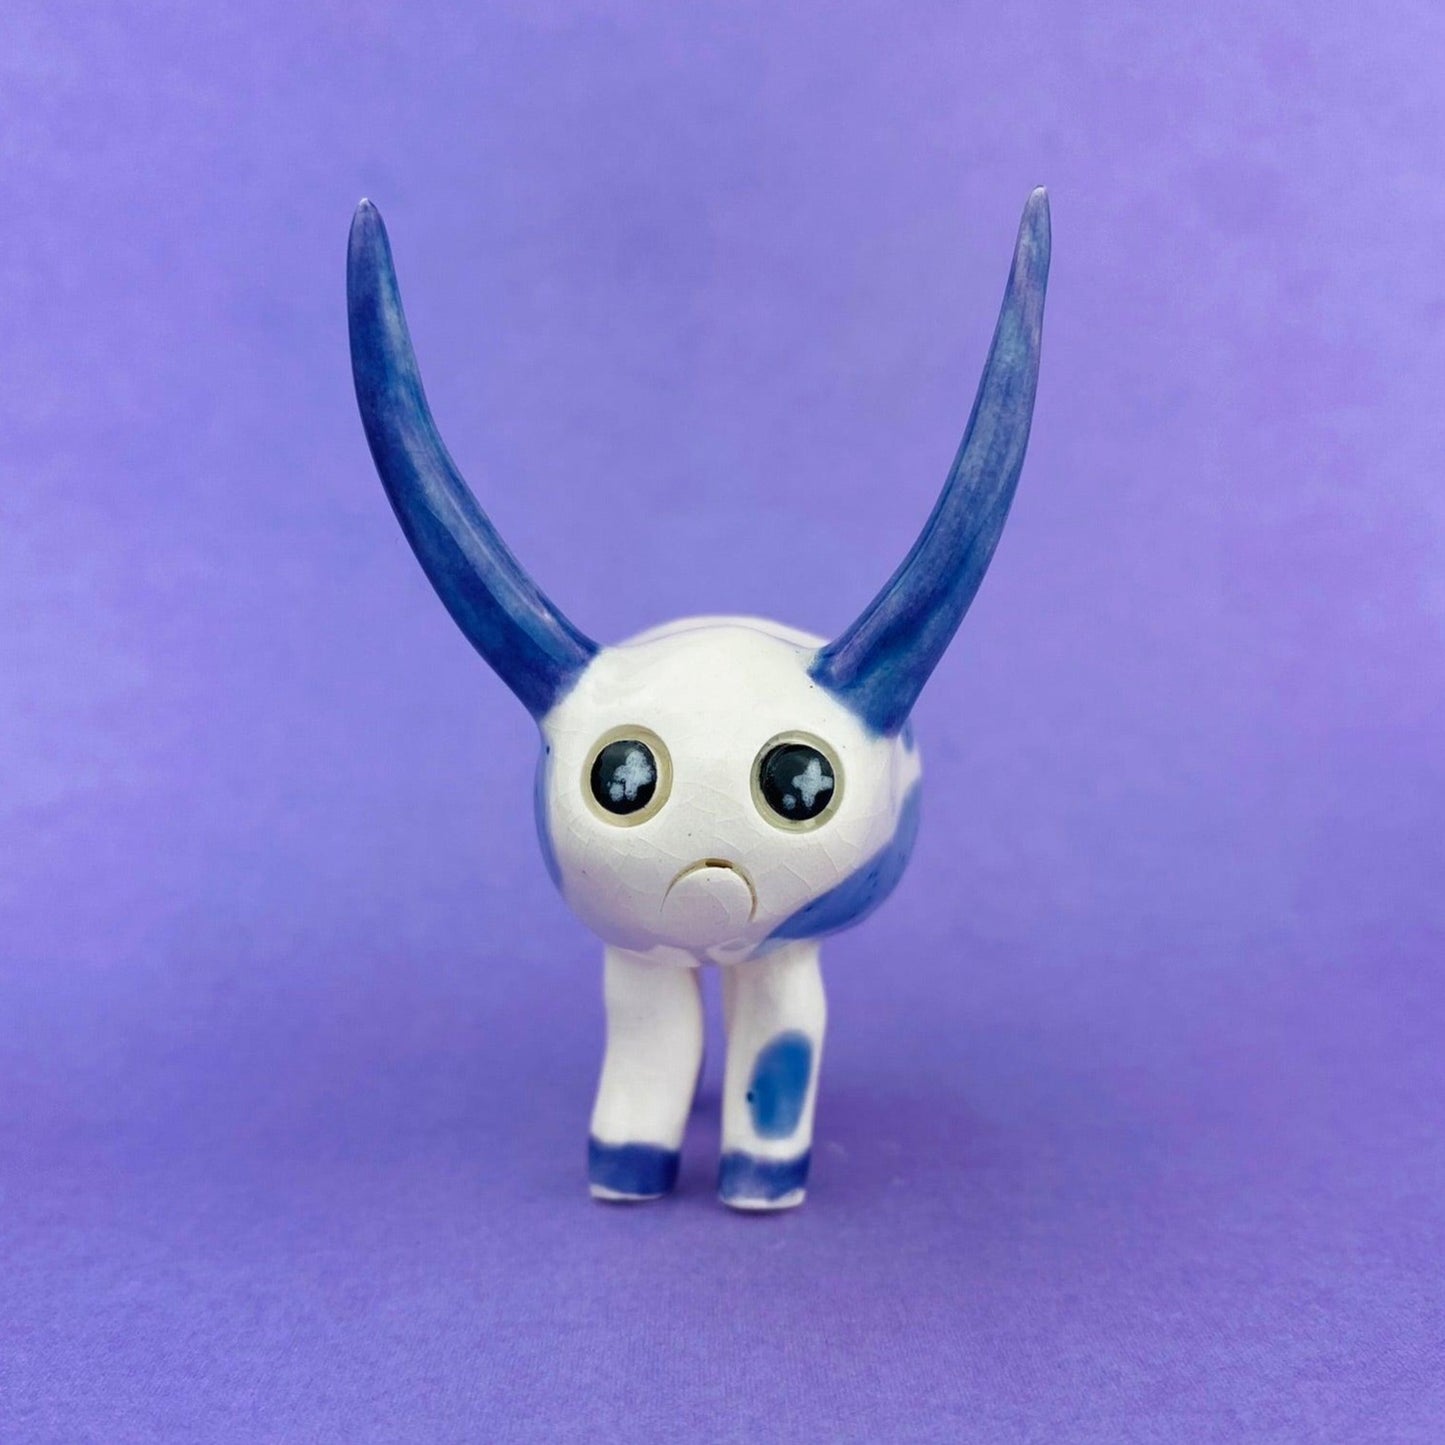 Cosmic Deer - Handmade Purple Cow Figurine Politely Declining